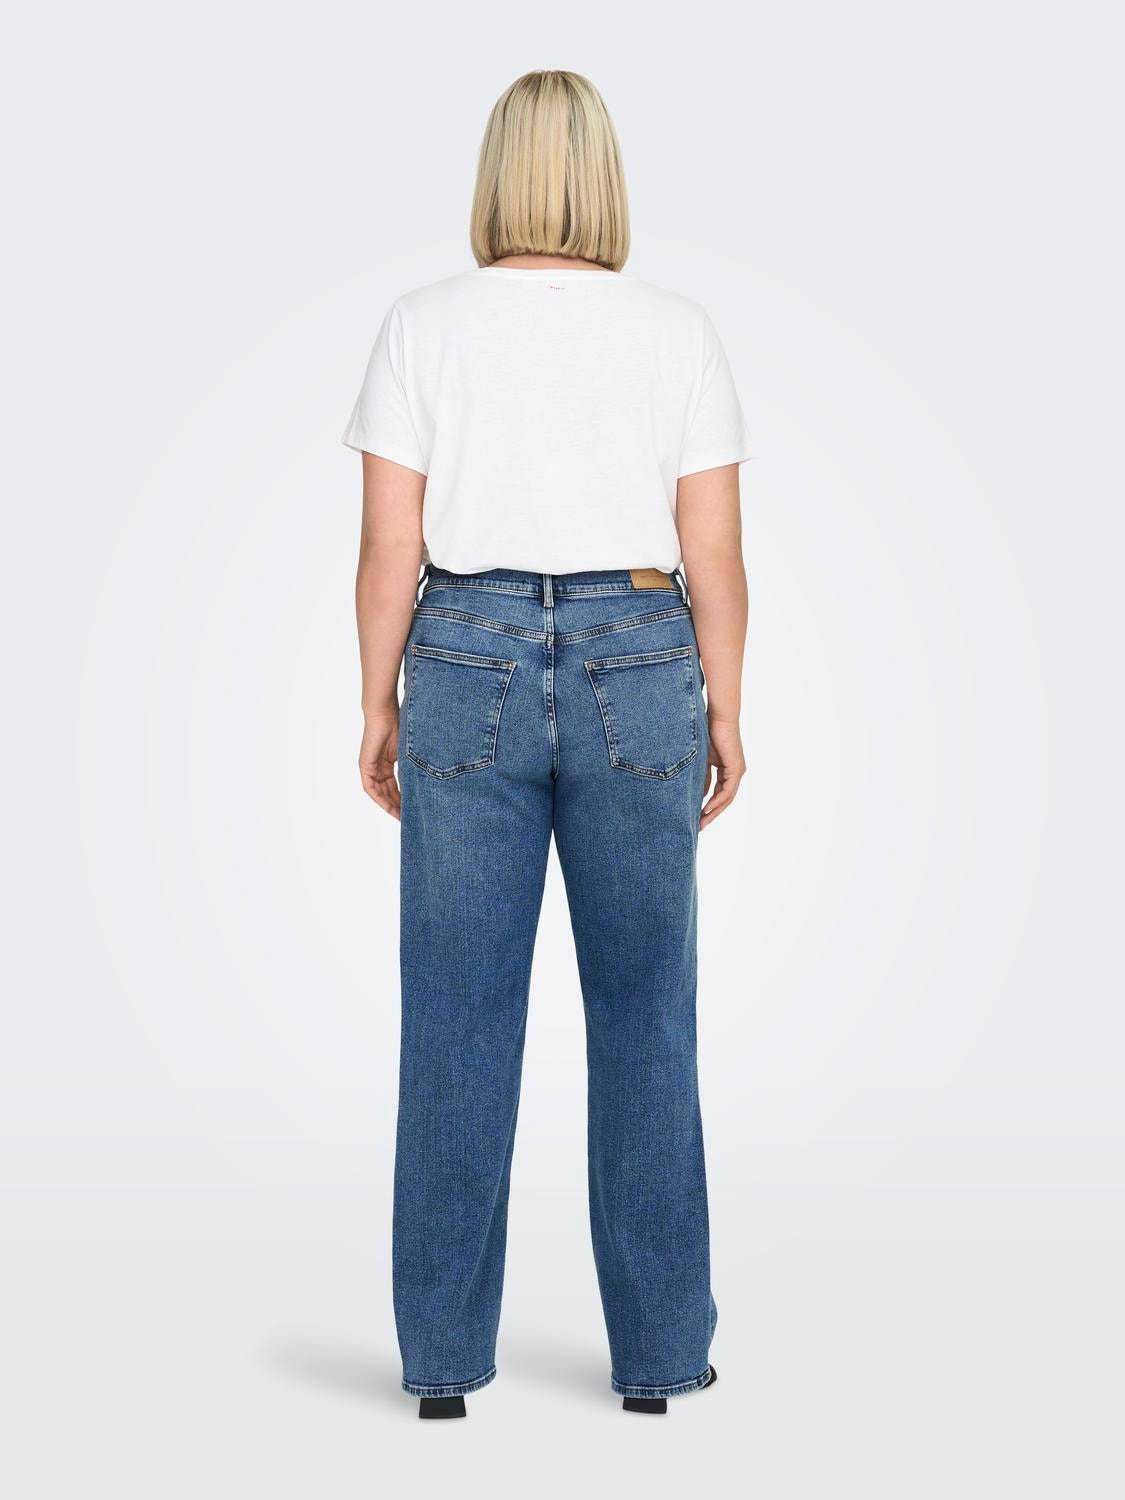 ONLY Straight Fit High waist Jeans -Dark Medium Blue Denim - 15280945